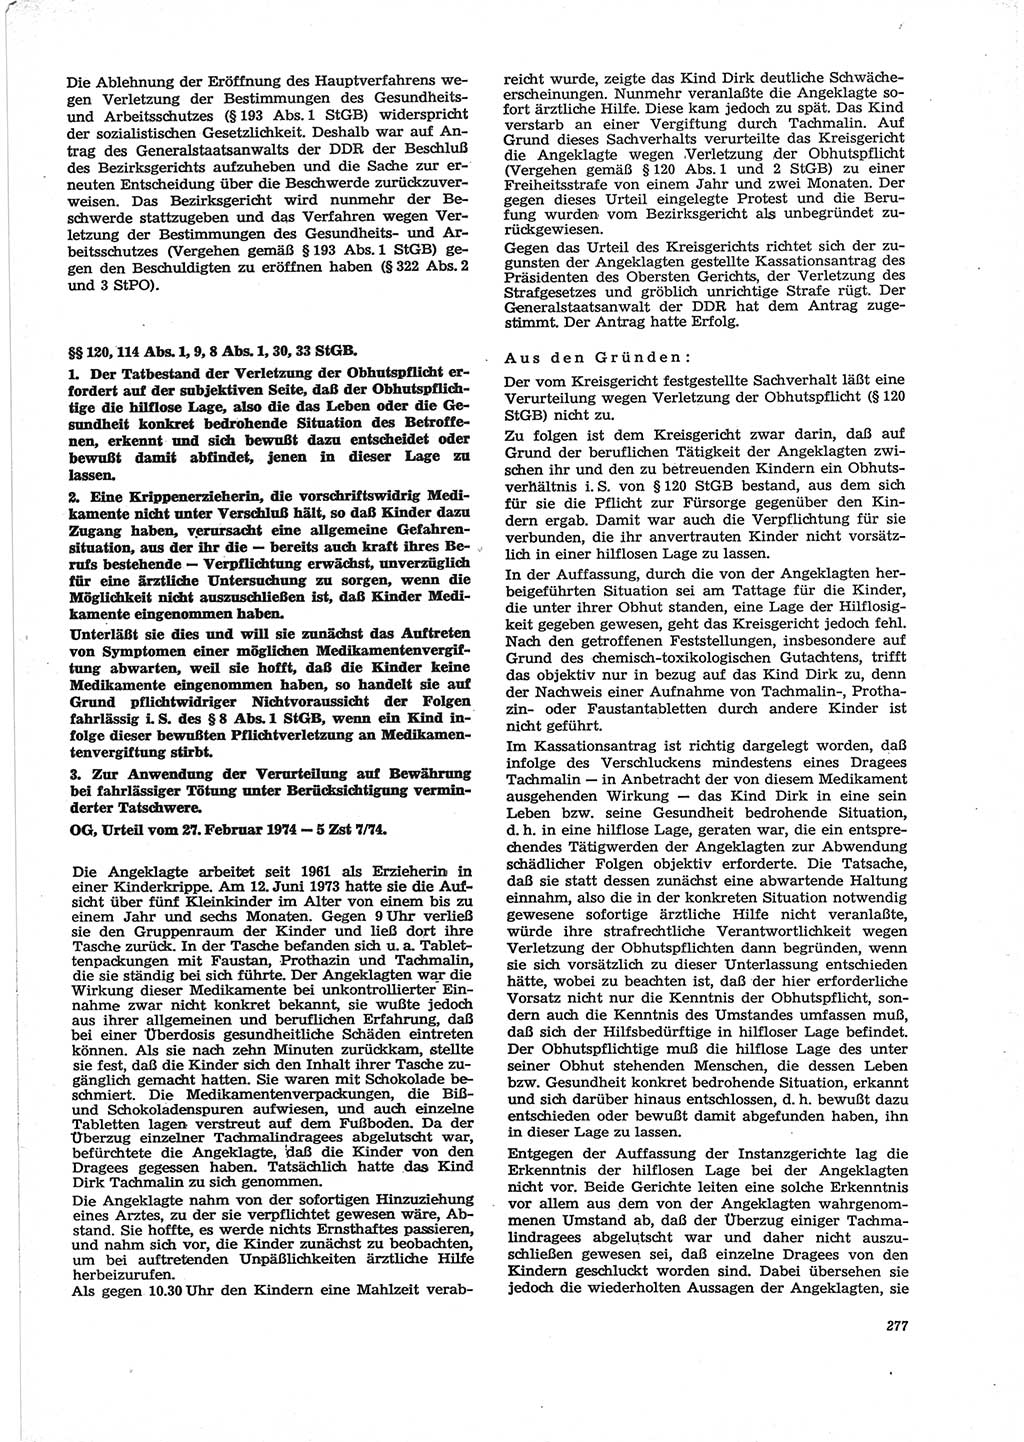 Neue Justiz (NJ), Zeitschrift für Recht und Rechtswissenschaft [Deutsche Demokratische Republik (DDR)], 28. Jahrgang 1974, Seite 277 (NJ DDR 1974, S. 277)